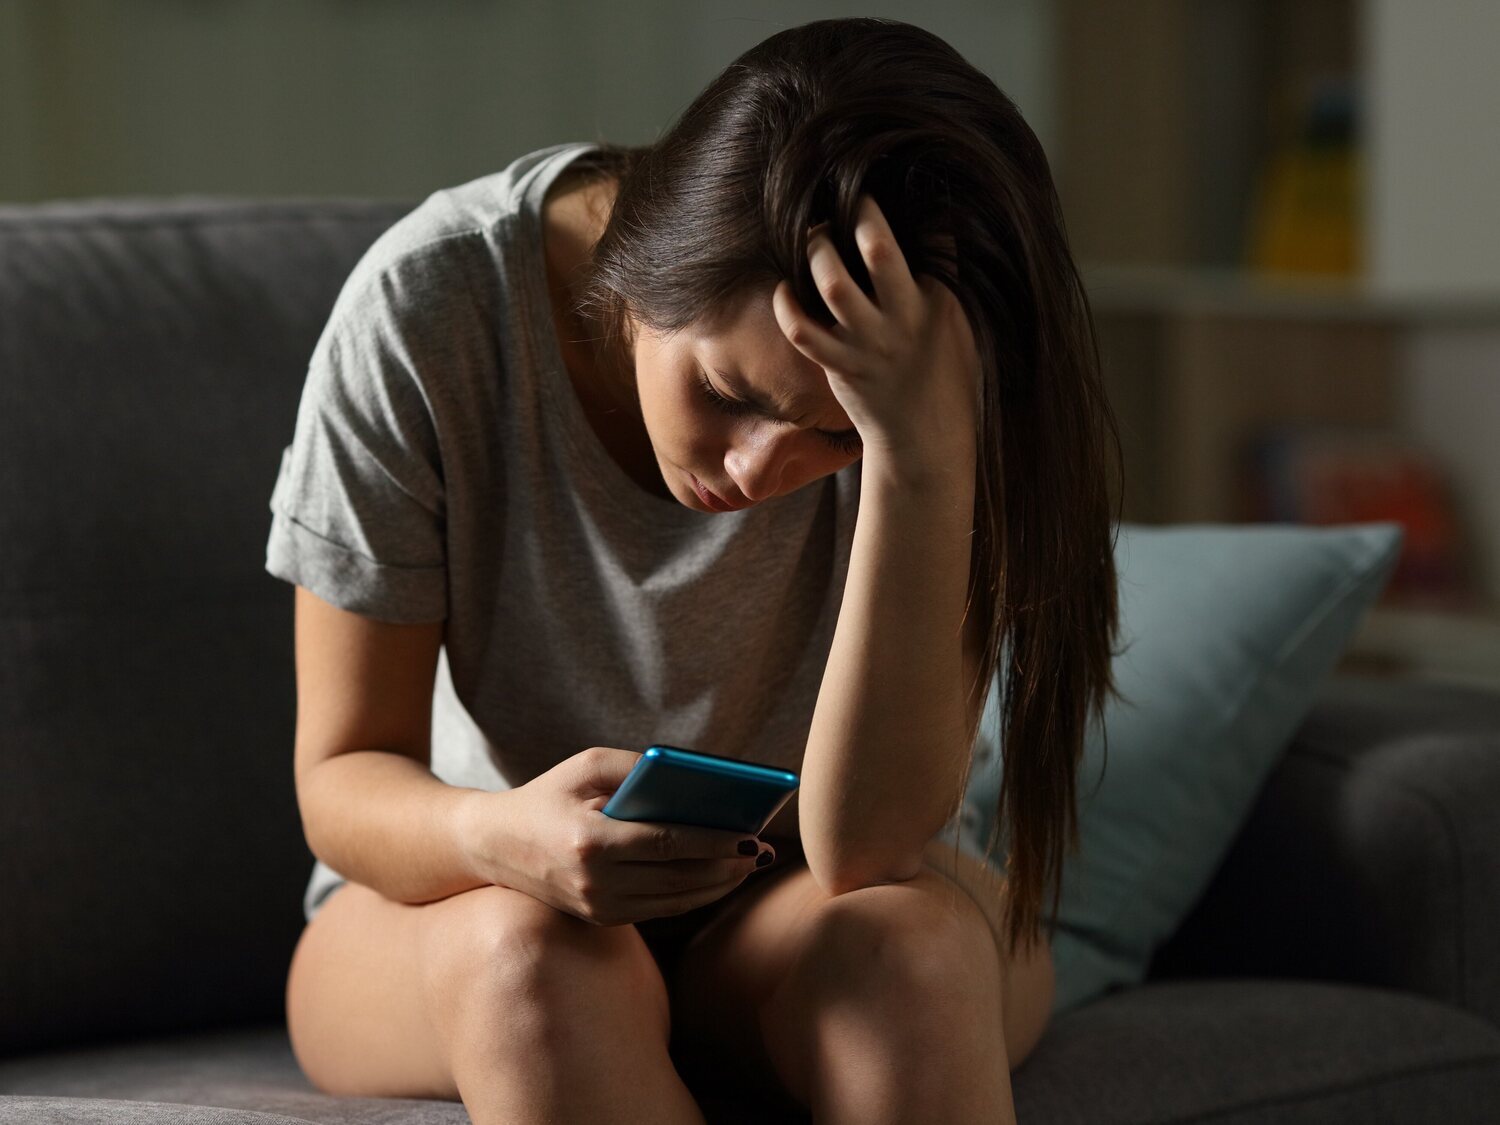 FOMO o miedo a perderse algo: la ansiedad cada vez más común vinculada a las redes sociales